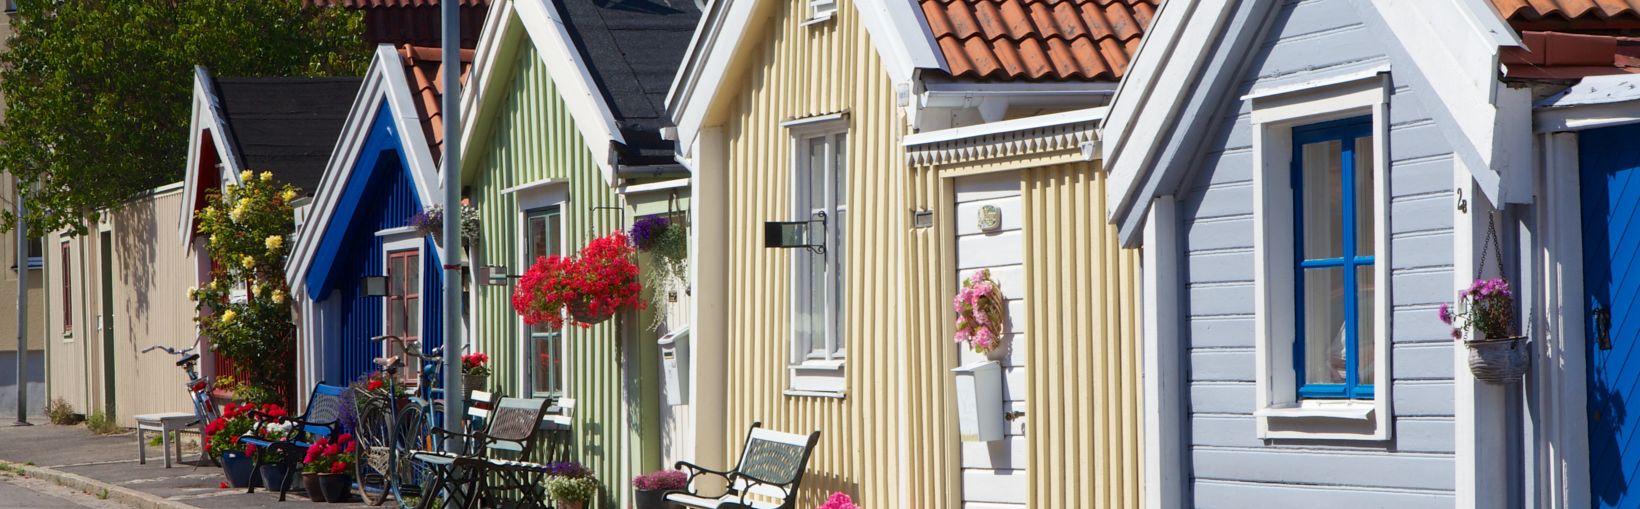 Bunte, einstöckige Holzhäuser in Karlskrona, Schweden